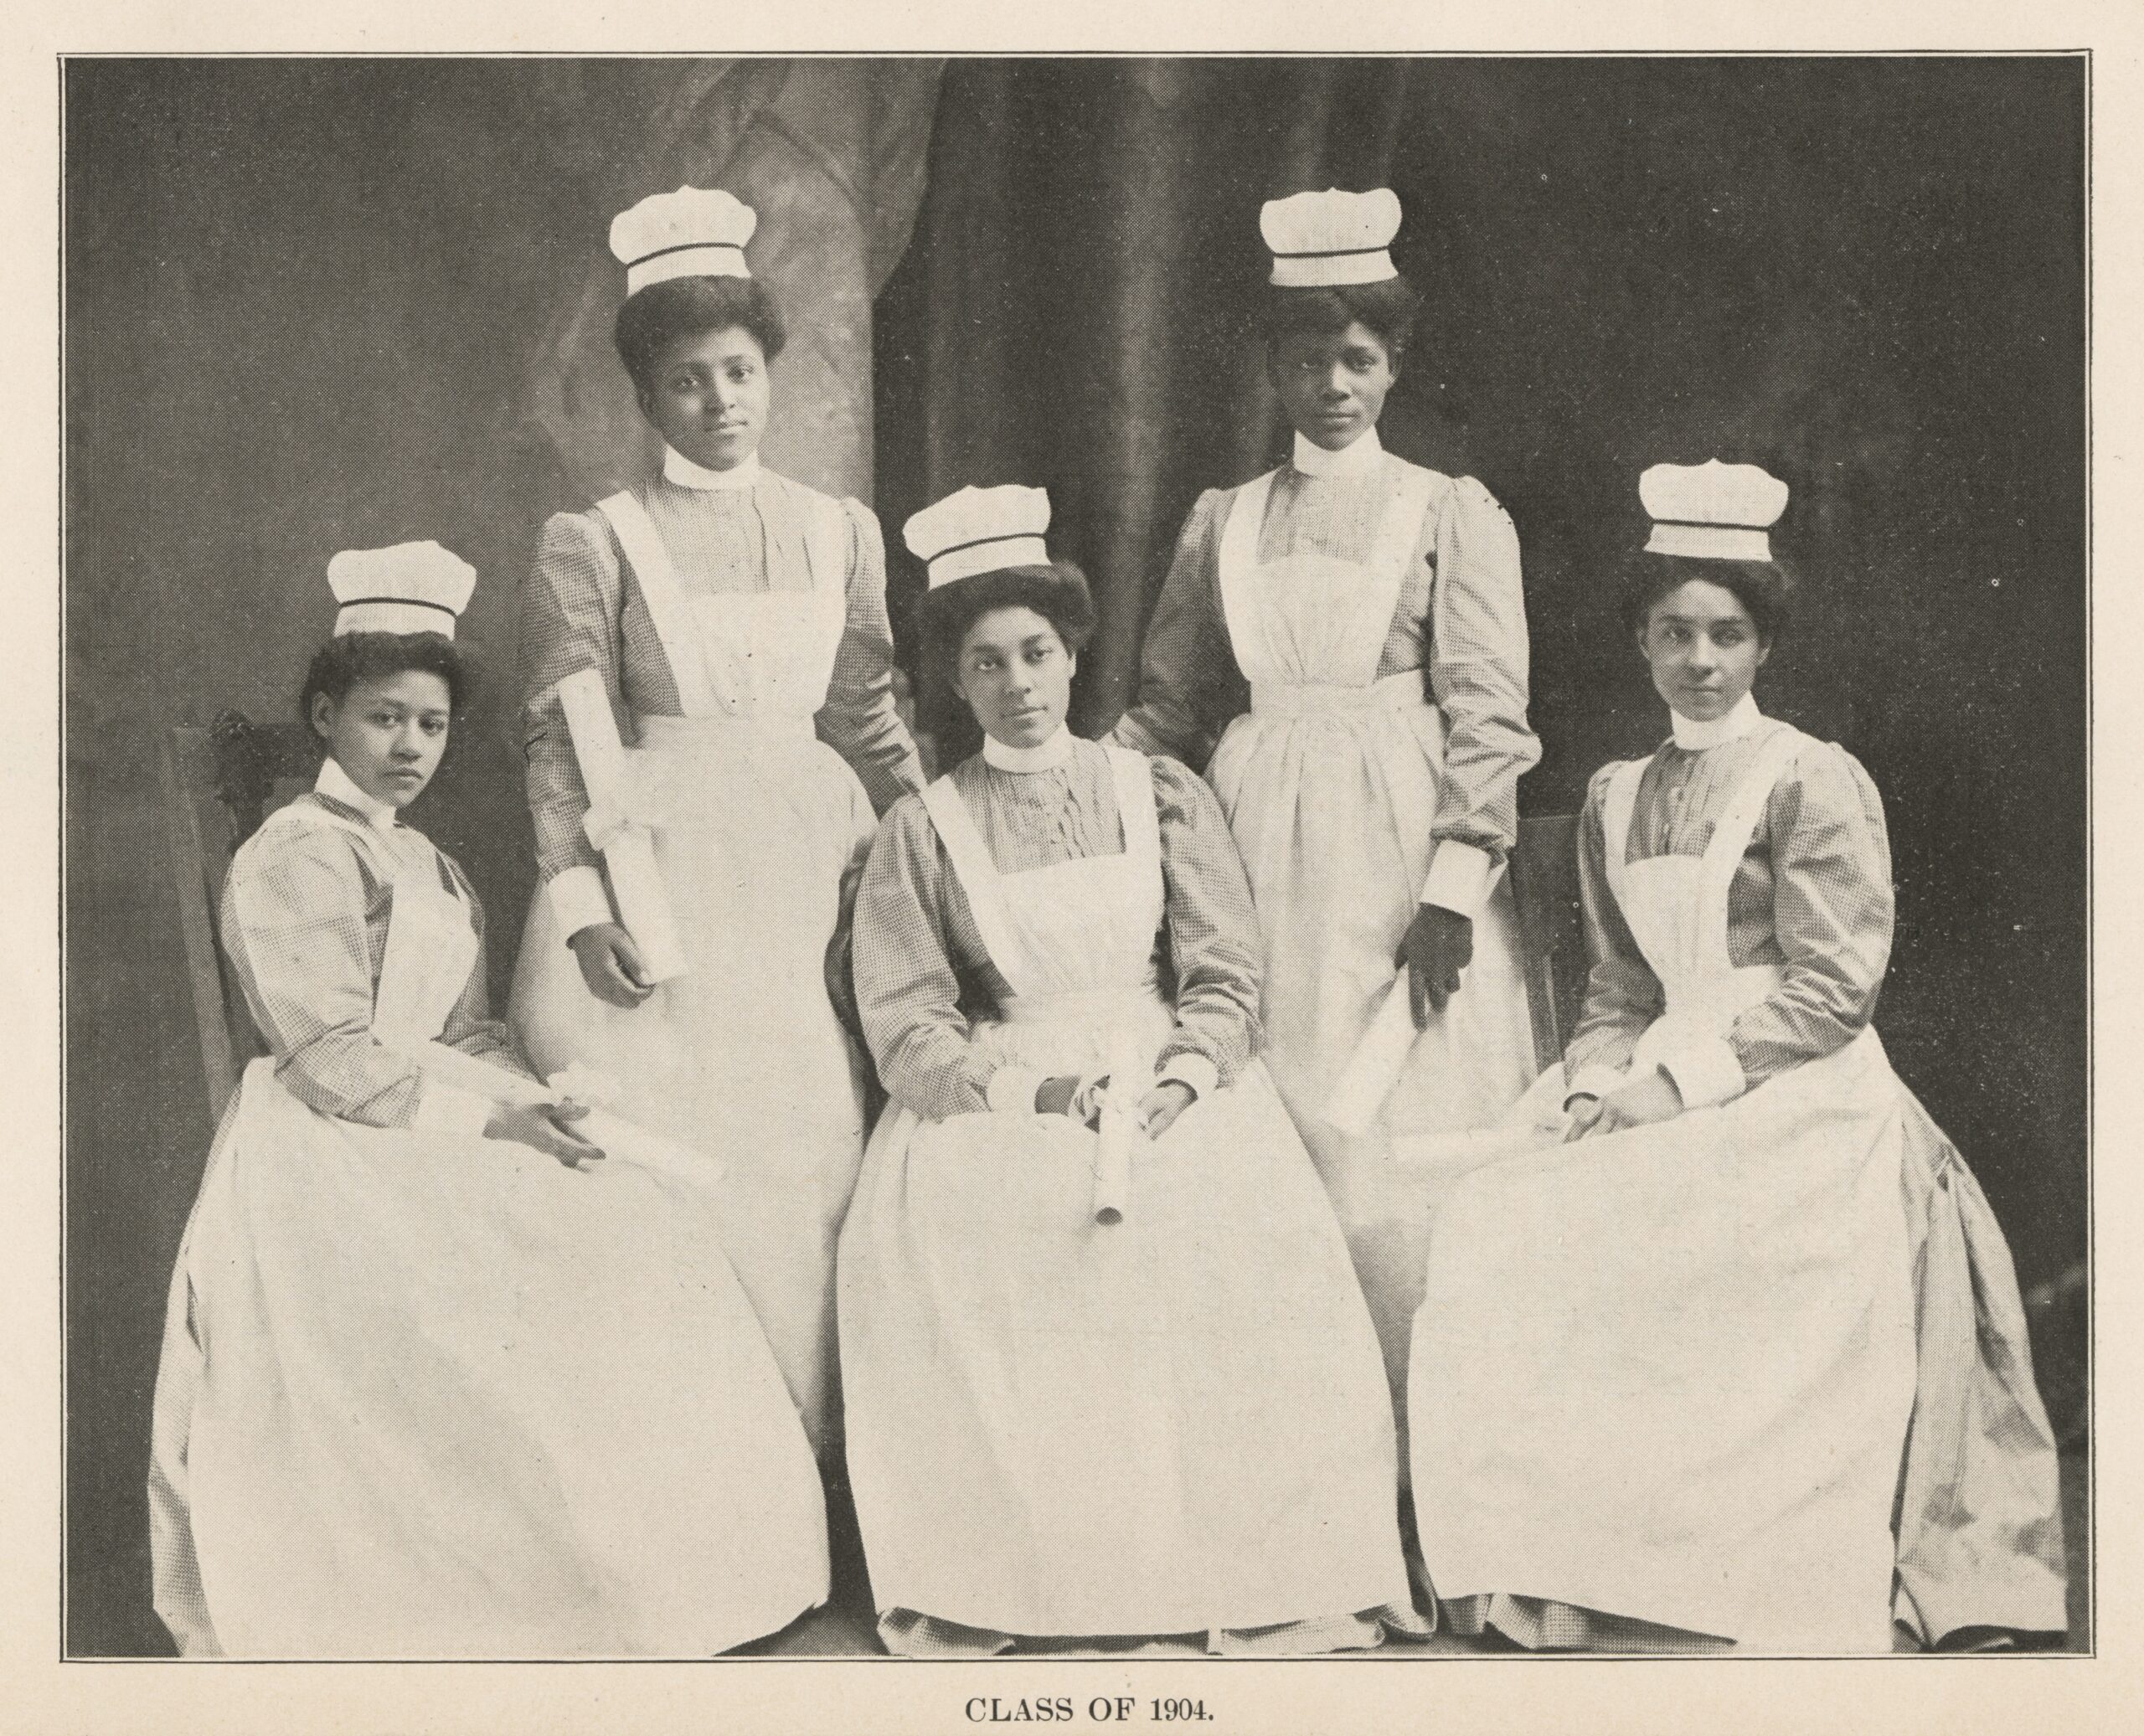 Five Black nurses in 1904 nurse uniforms